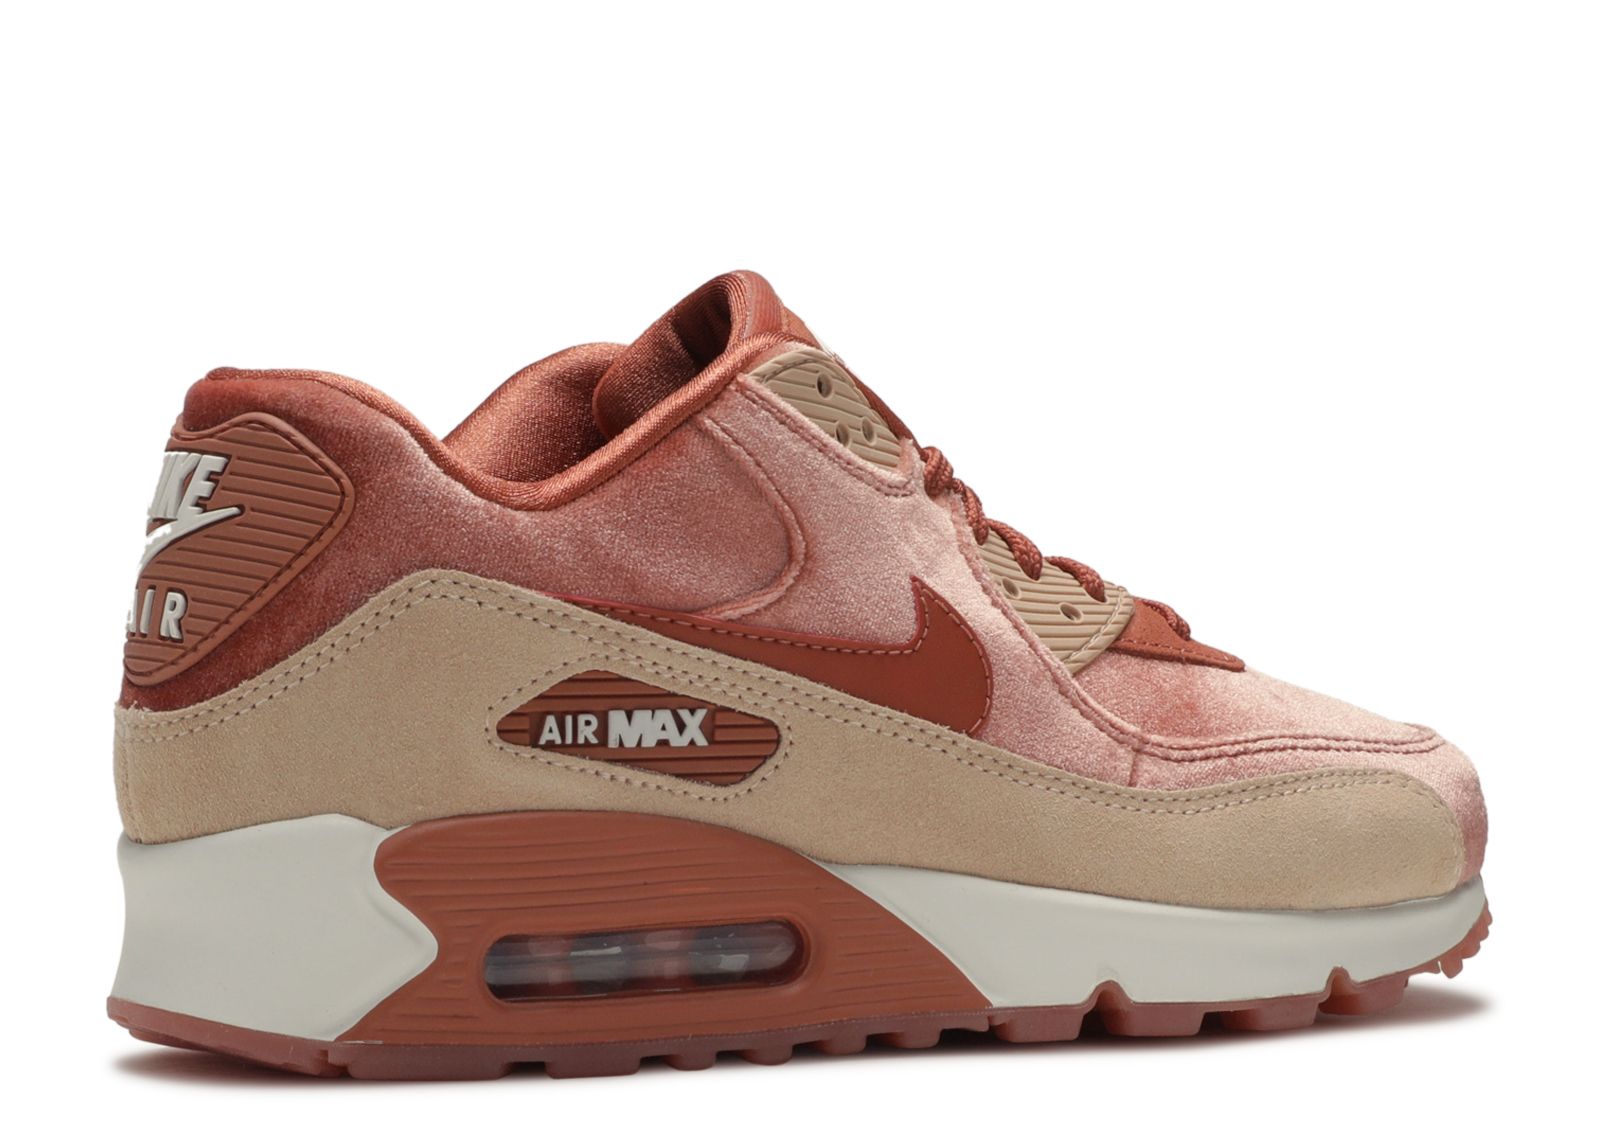 Wmns Air Max 90 LX 'Dusty Peach' - Nike 